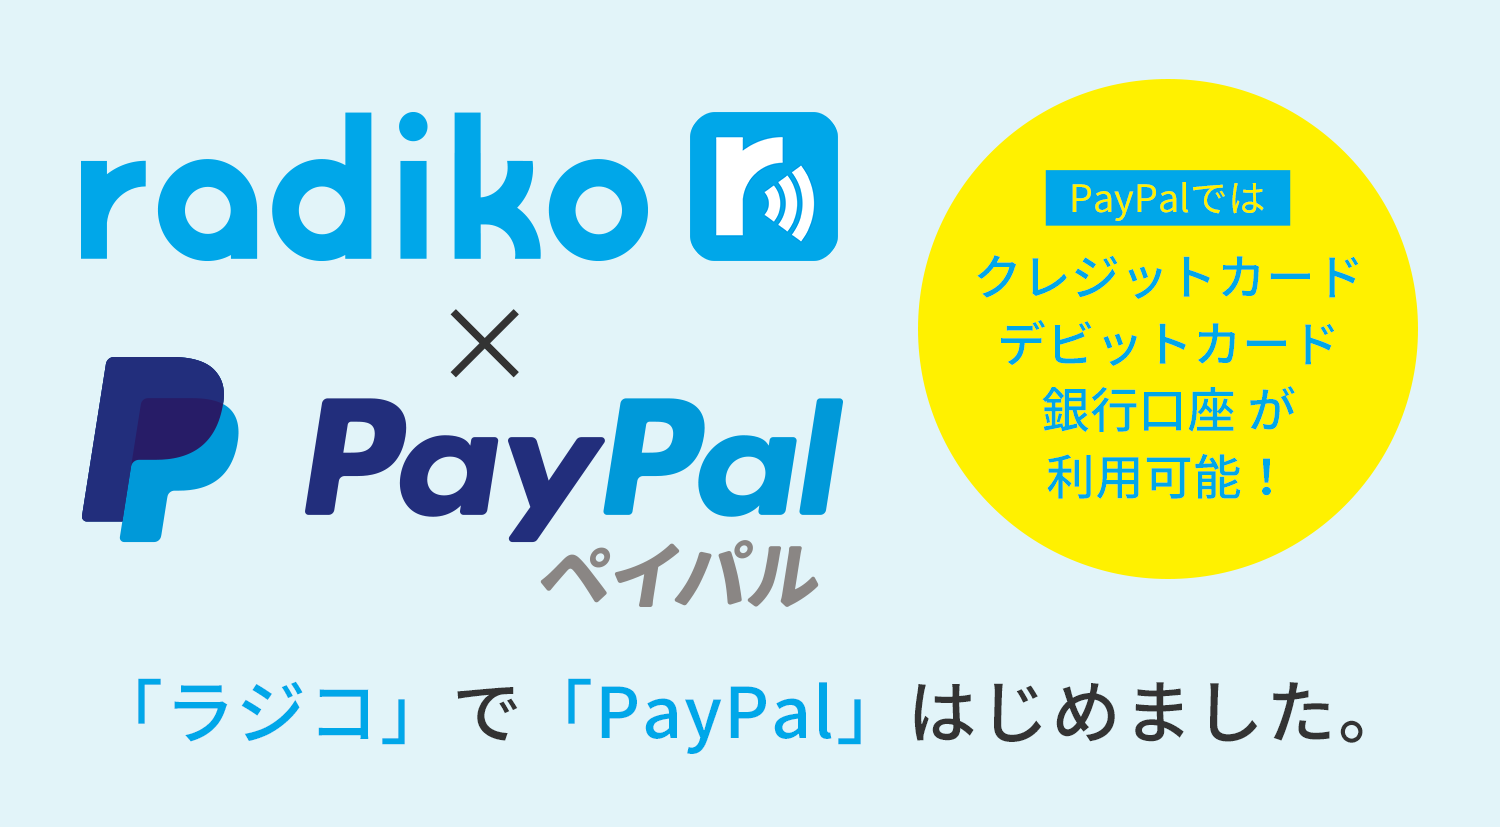 「ラジコ」で「PayPal」はじめました。